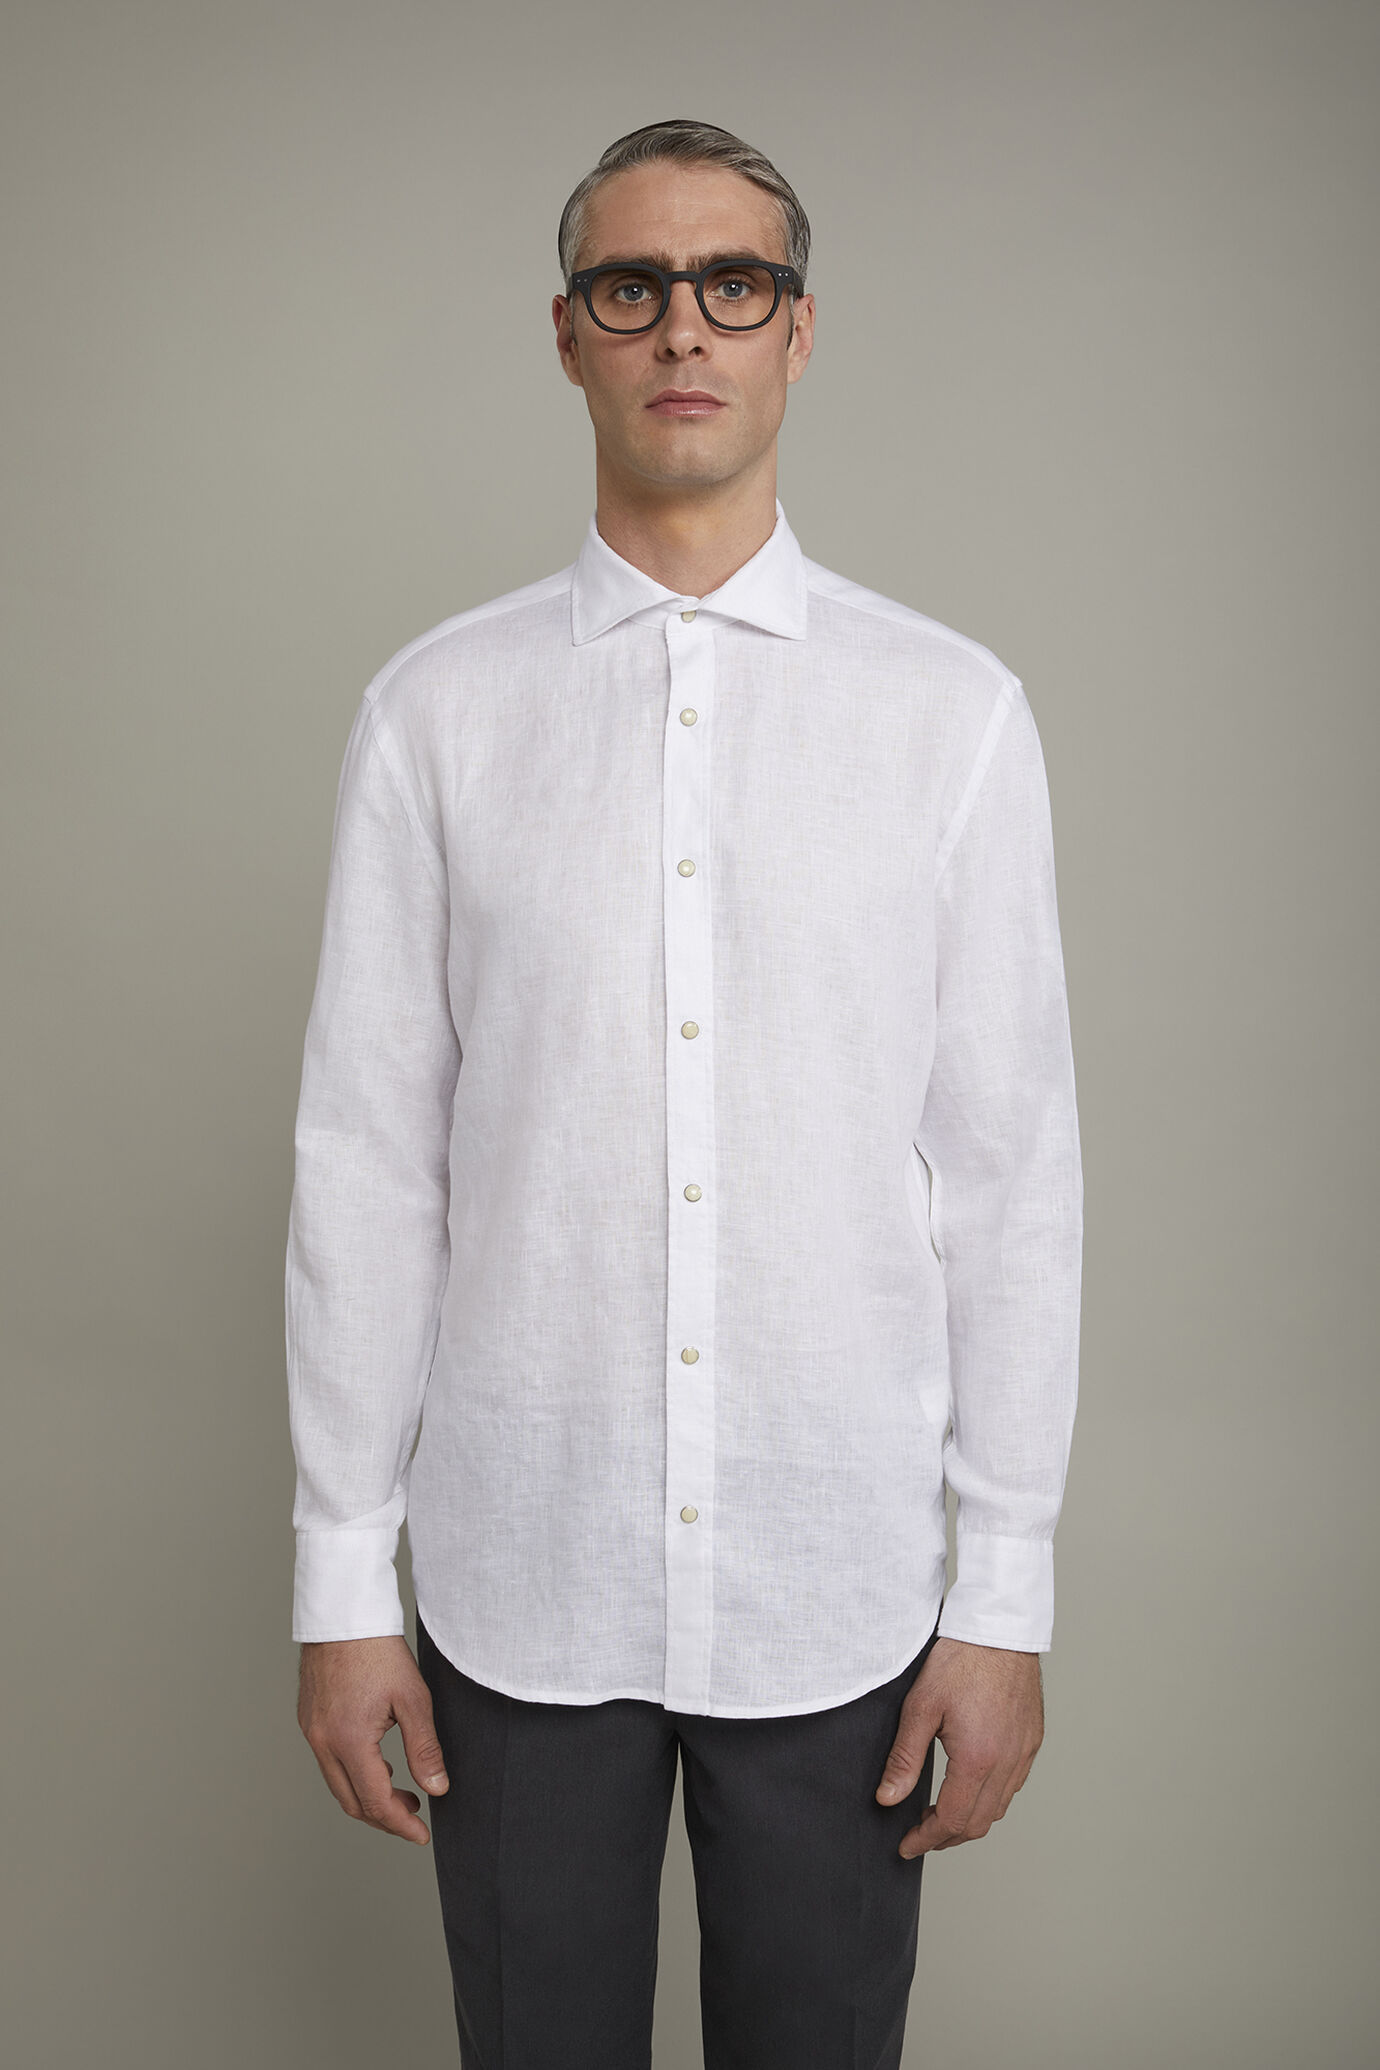 Camicia casual uomo collo classico 100% lino comfort fit image number 2